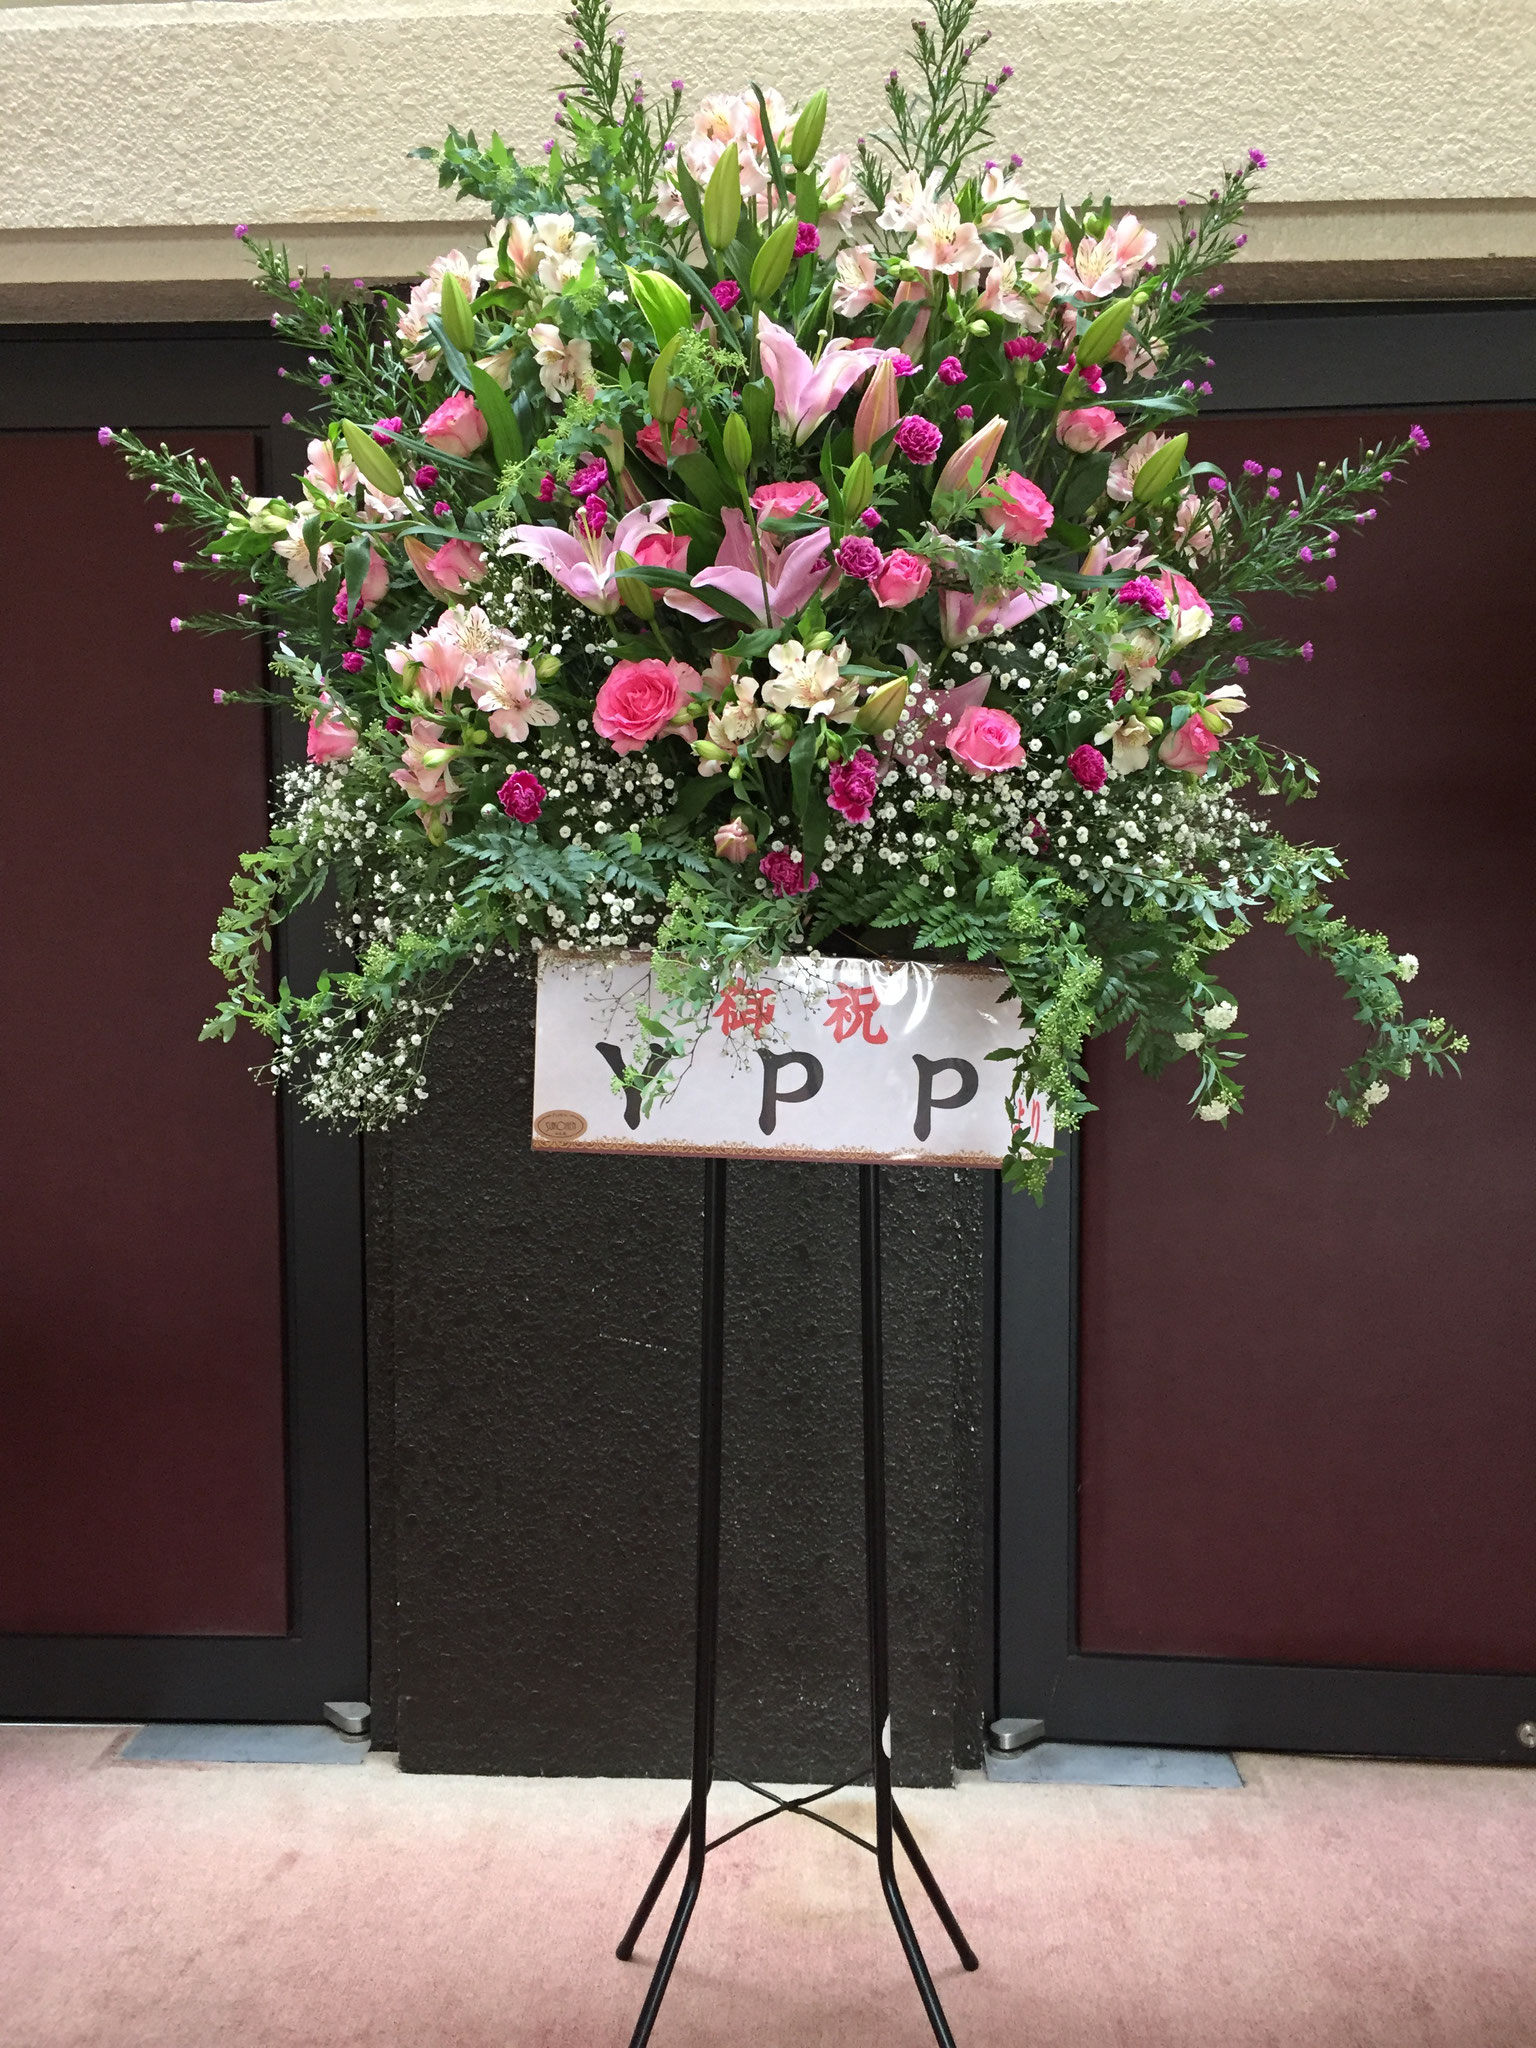 YPP様、お花ありがとうございました。